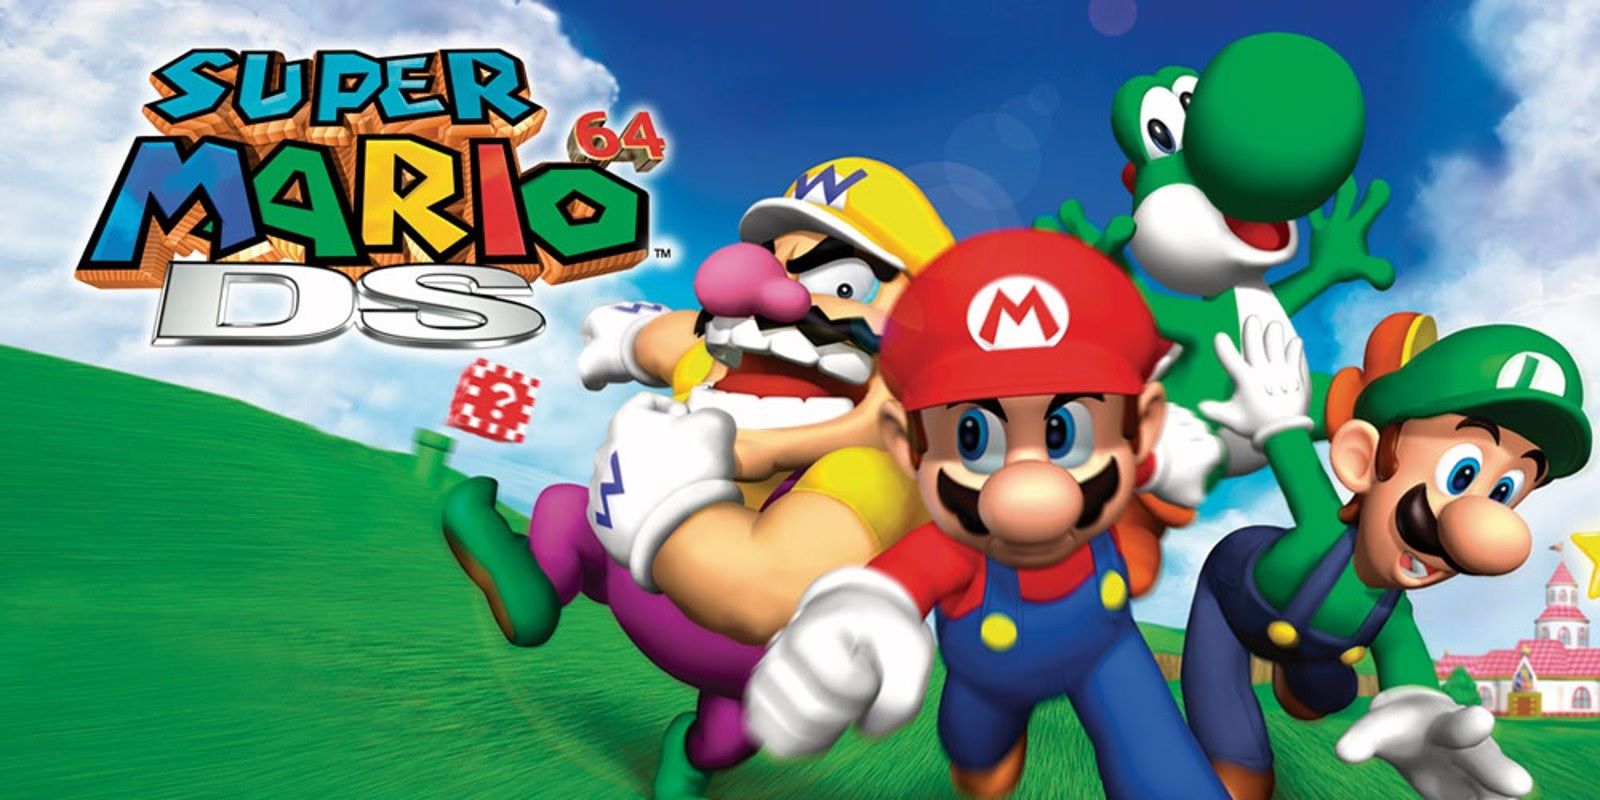 Box art of Super Mario 64 DS